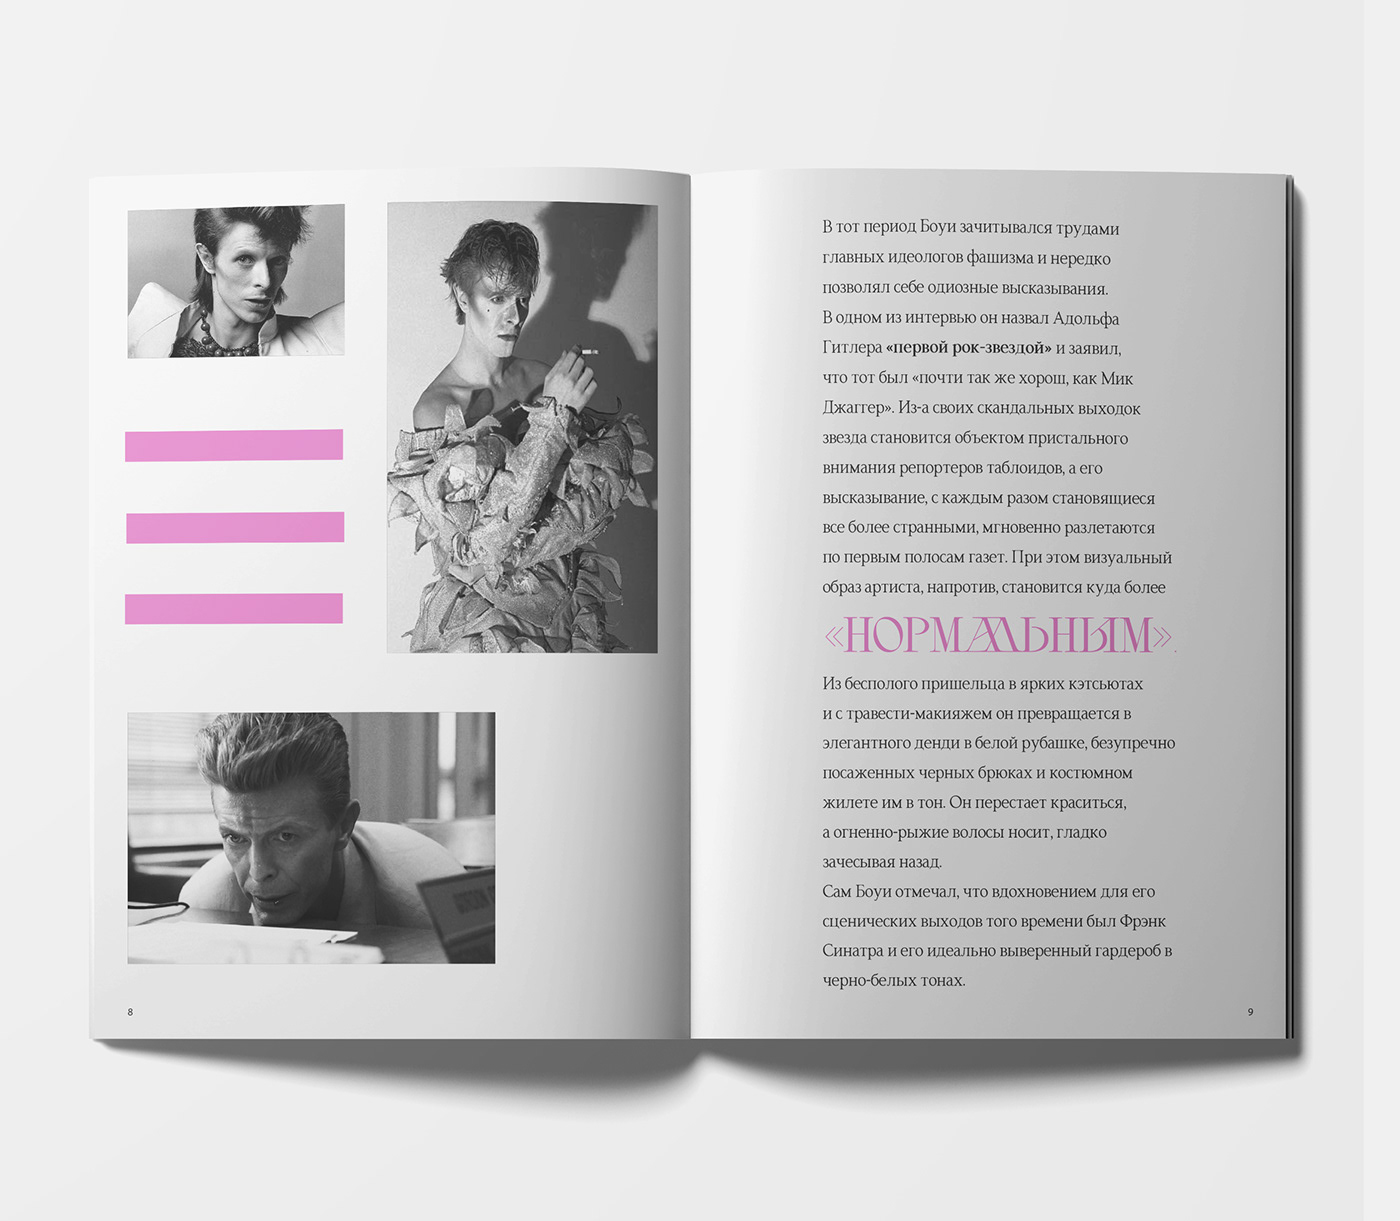 design david bowie Ziggy Stardust Bowie magazine Magazine design book design Adobe InDesign